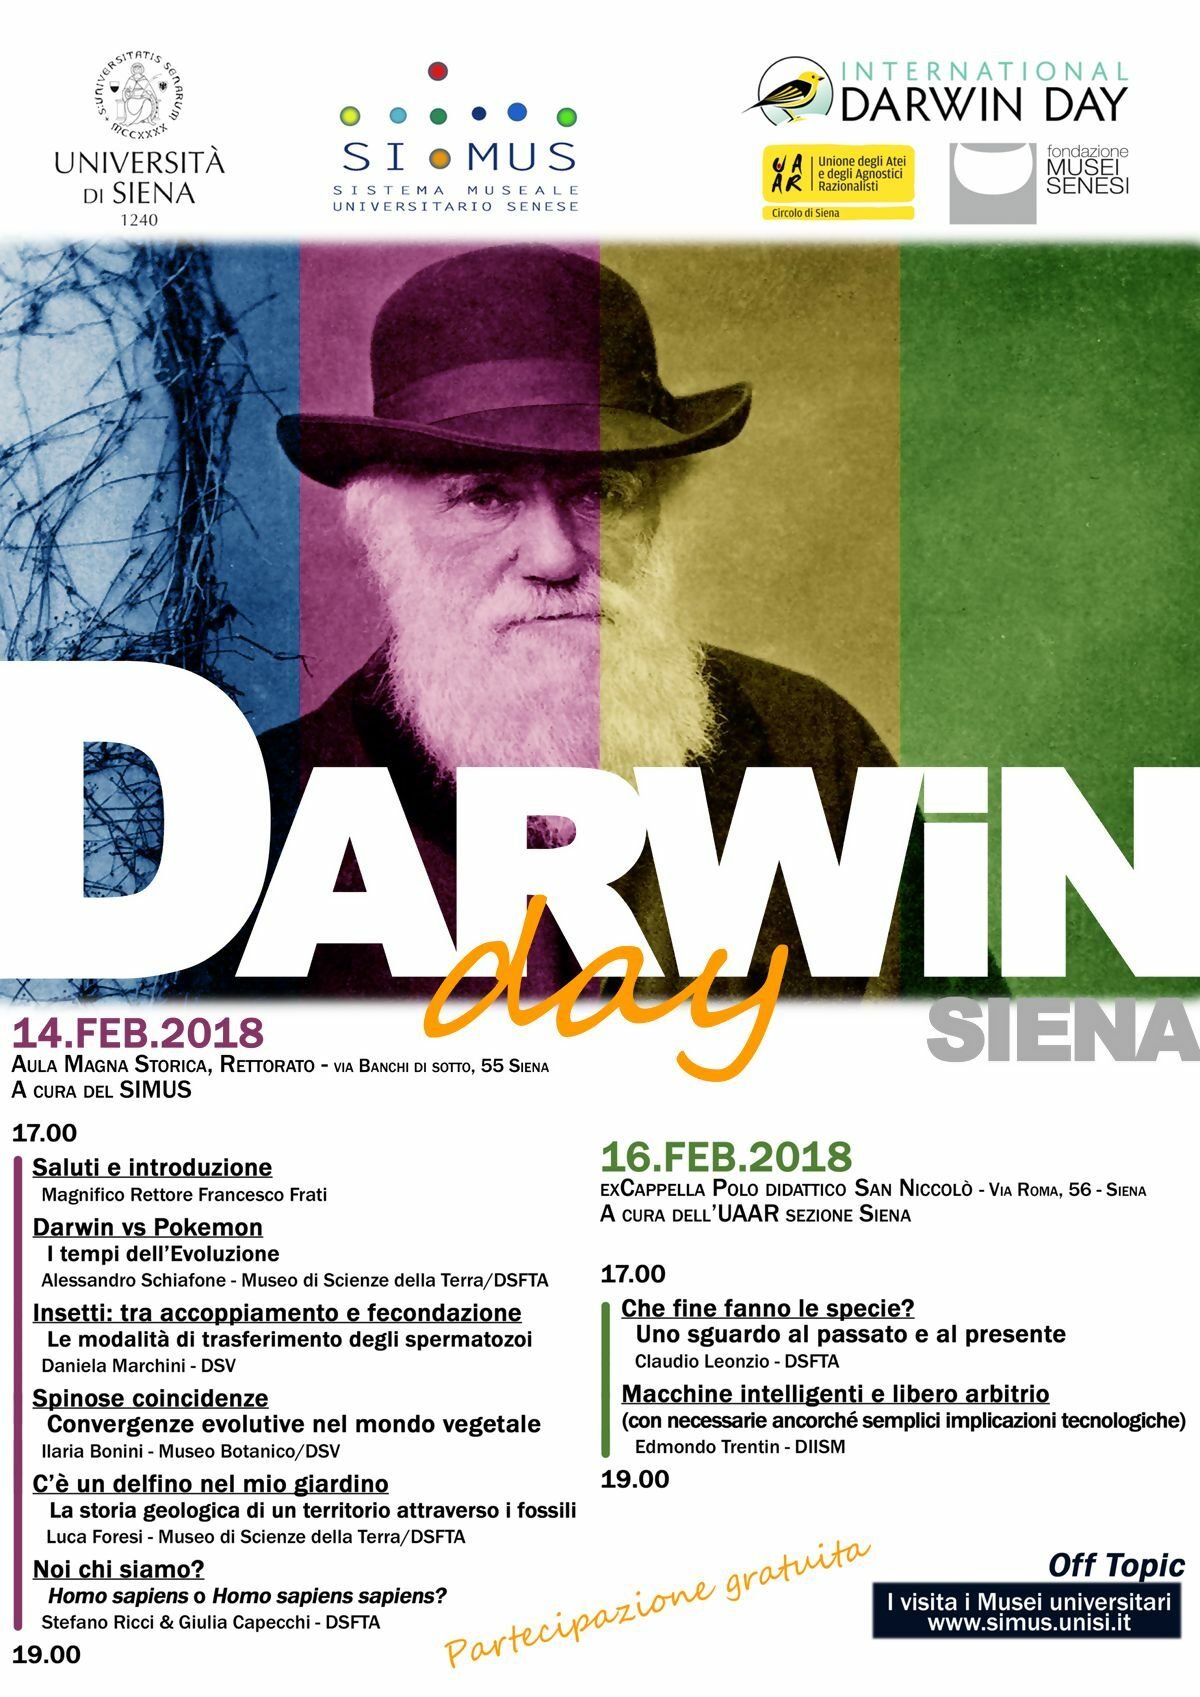 Il programma del Darwin Day a Siena